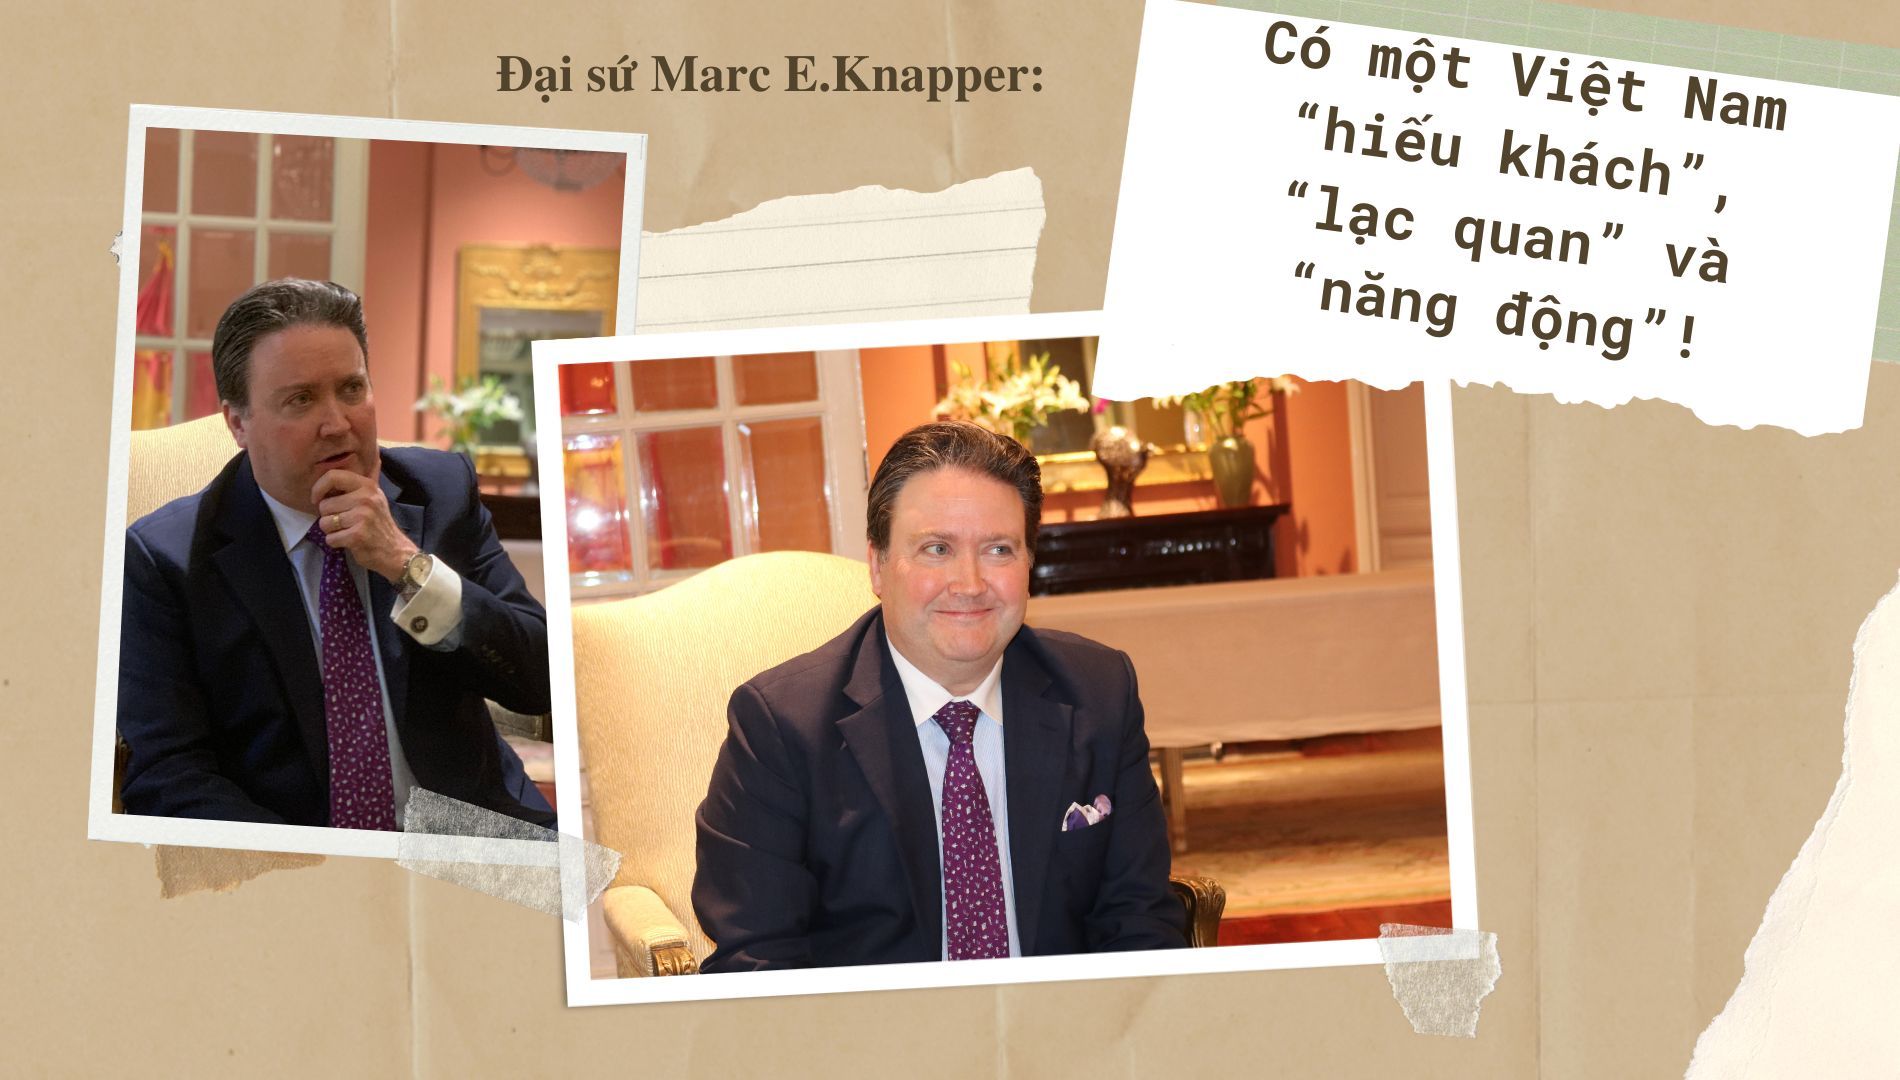 Đại sứ Marc E.Knapper: Có một Việt Nam “hiếu khách”, “lạc quan” và “năng động”